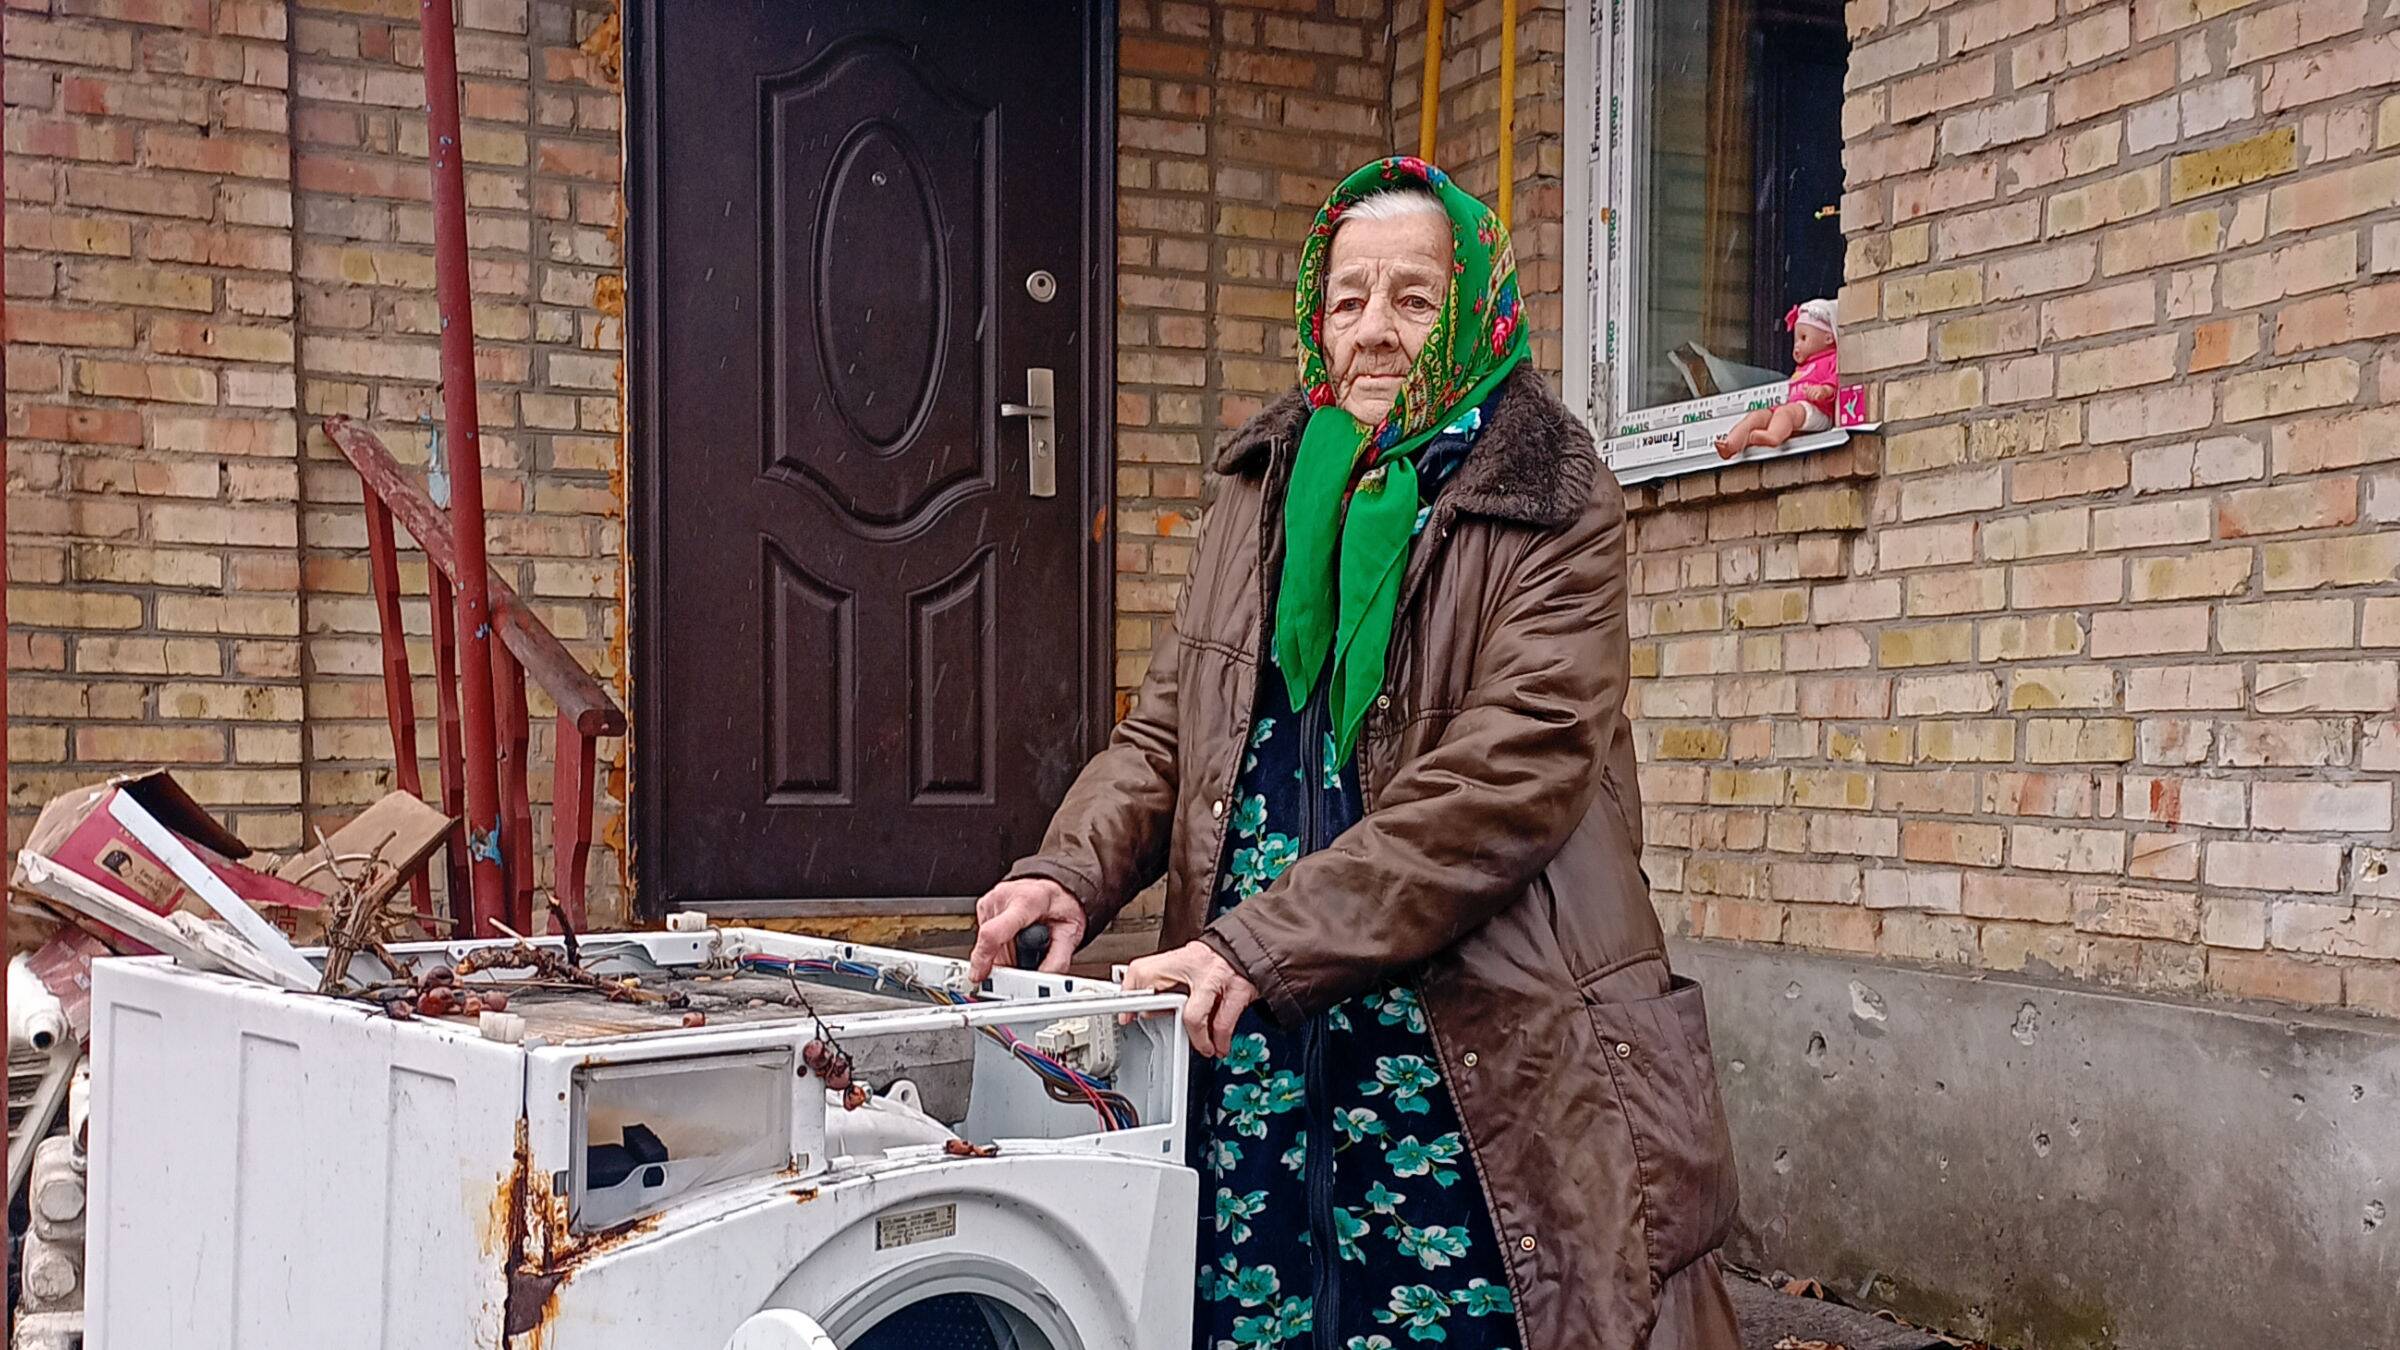 Ältere Frau mit einem Kopftuch steht vor einem Haus. Neben ihr ist eine Waschmaschine, die völlig zerstört ist. Die Frau berührt die Waschmaschine mit den Händen.